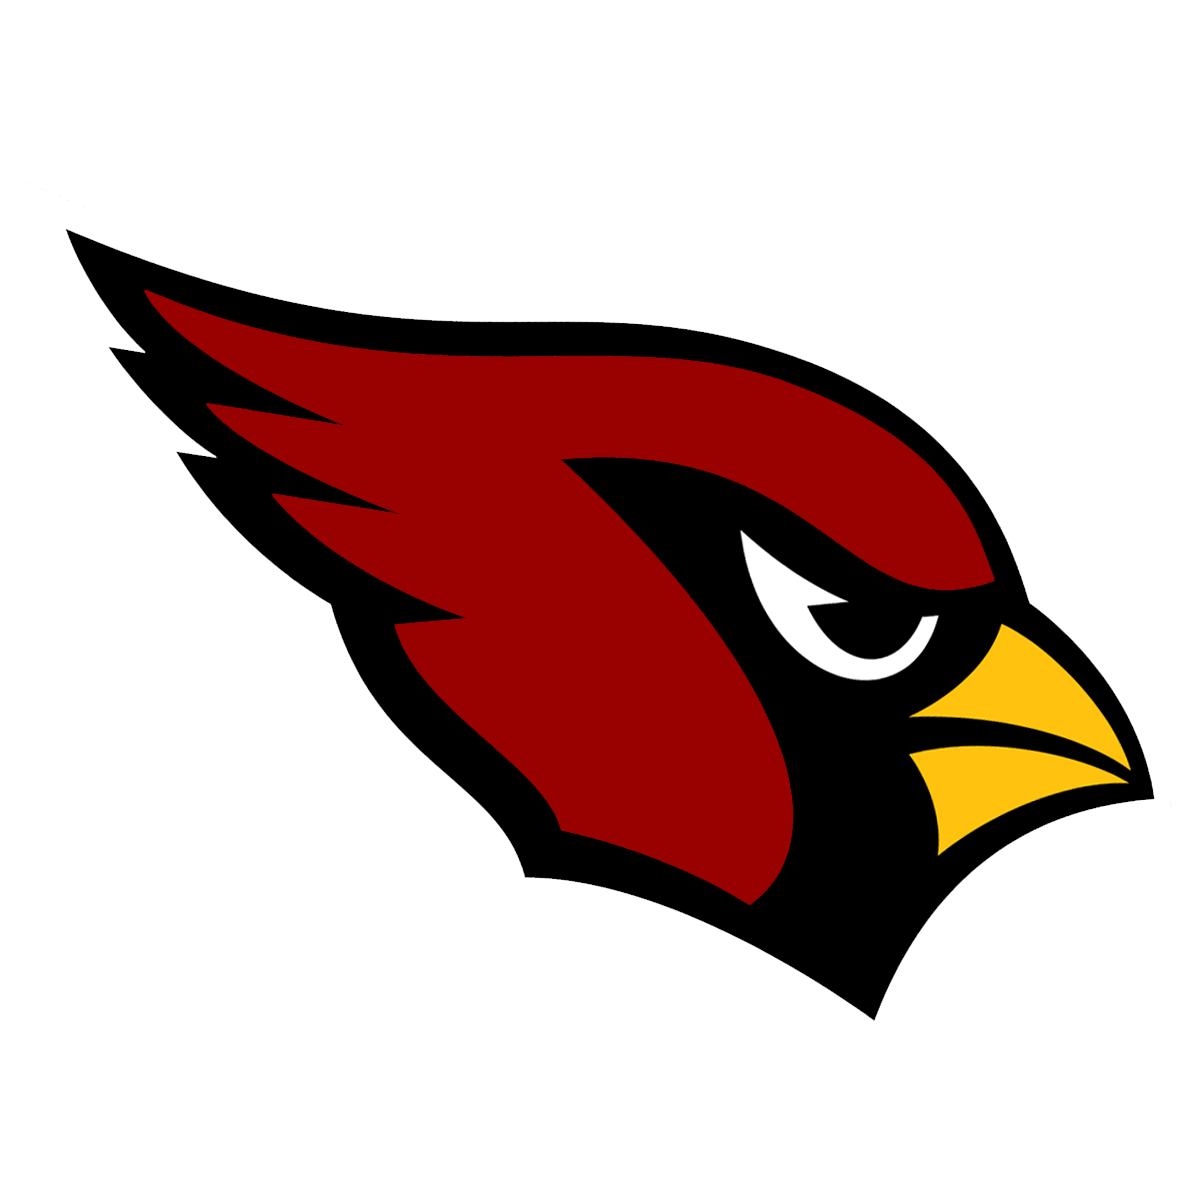 Cardinals Baseball Logo - Cardinal baseball svg transparent